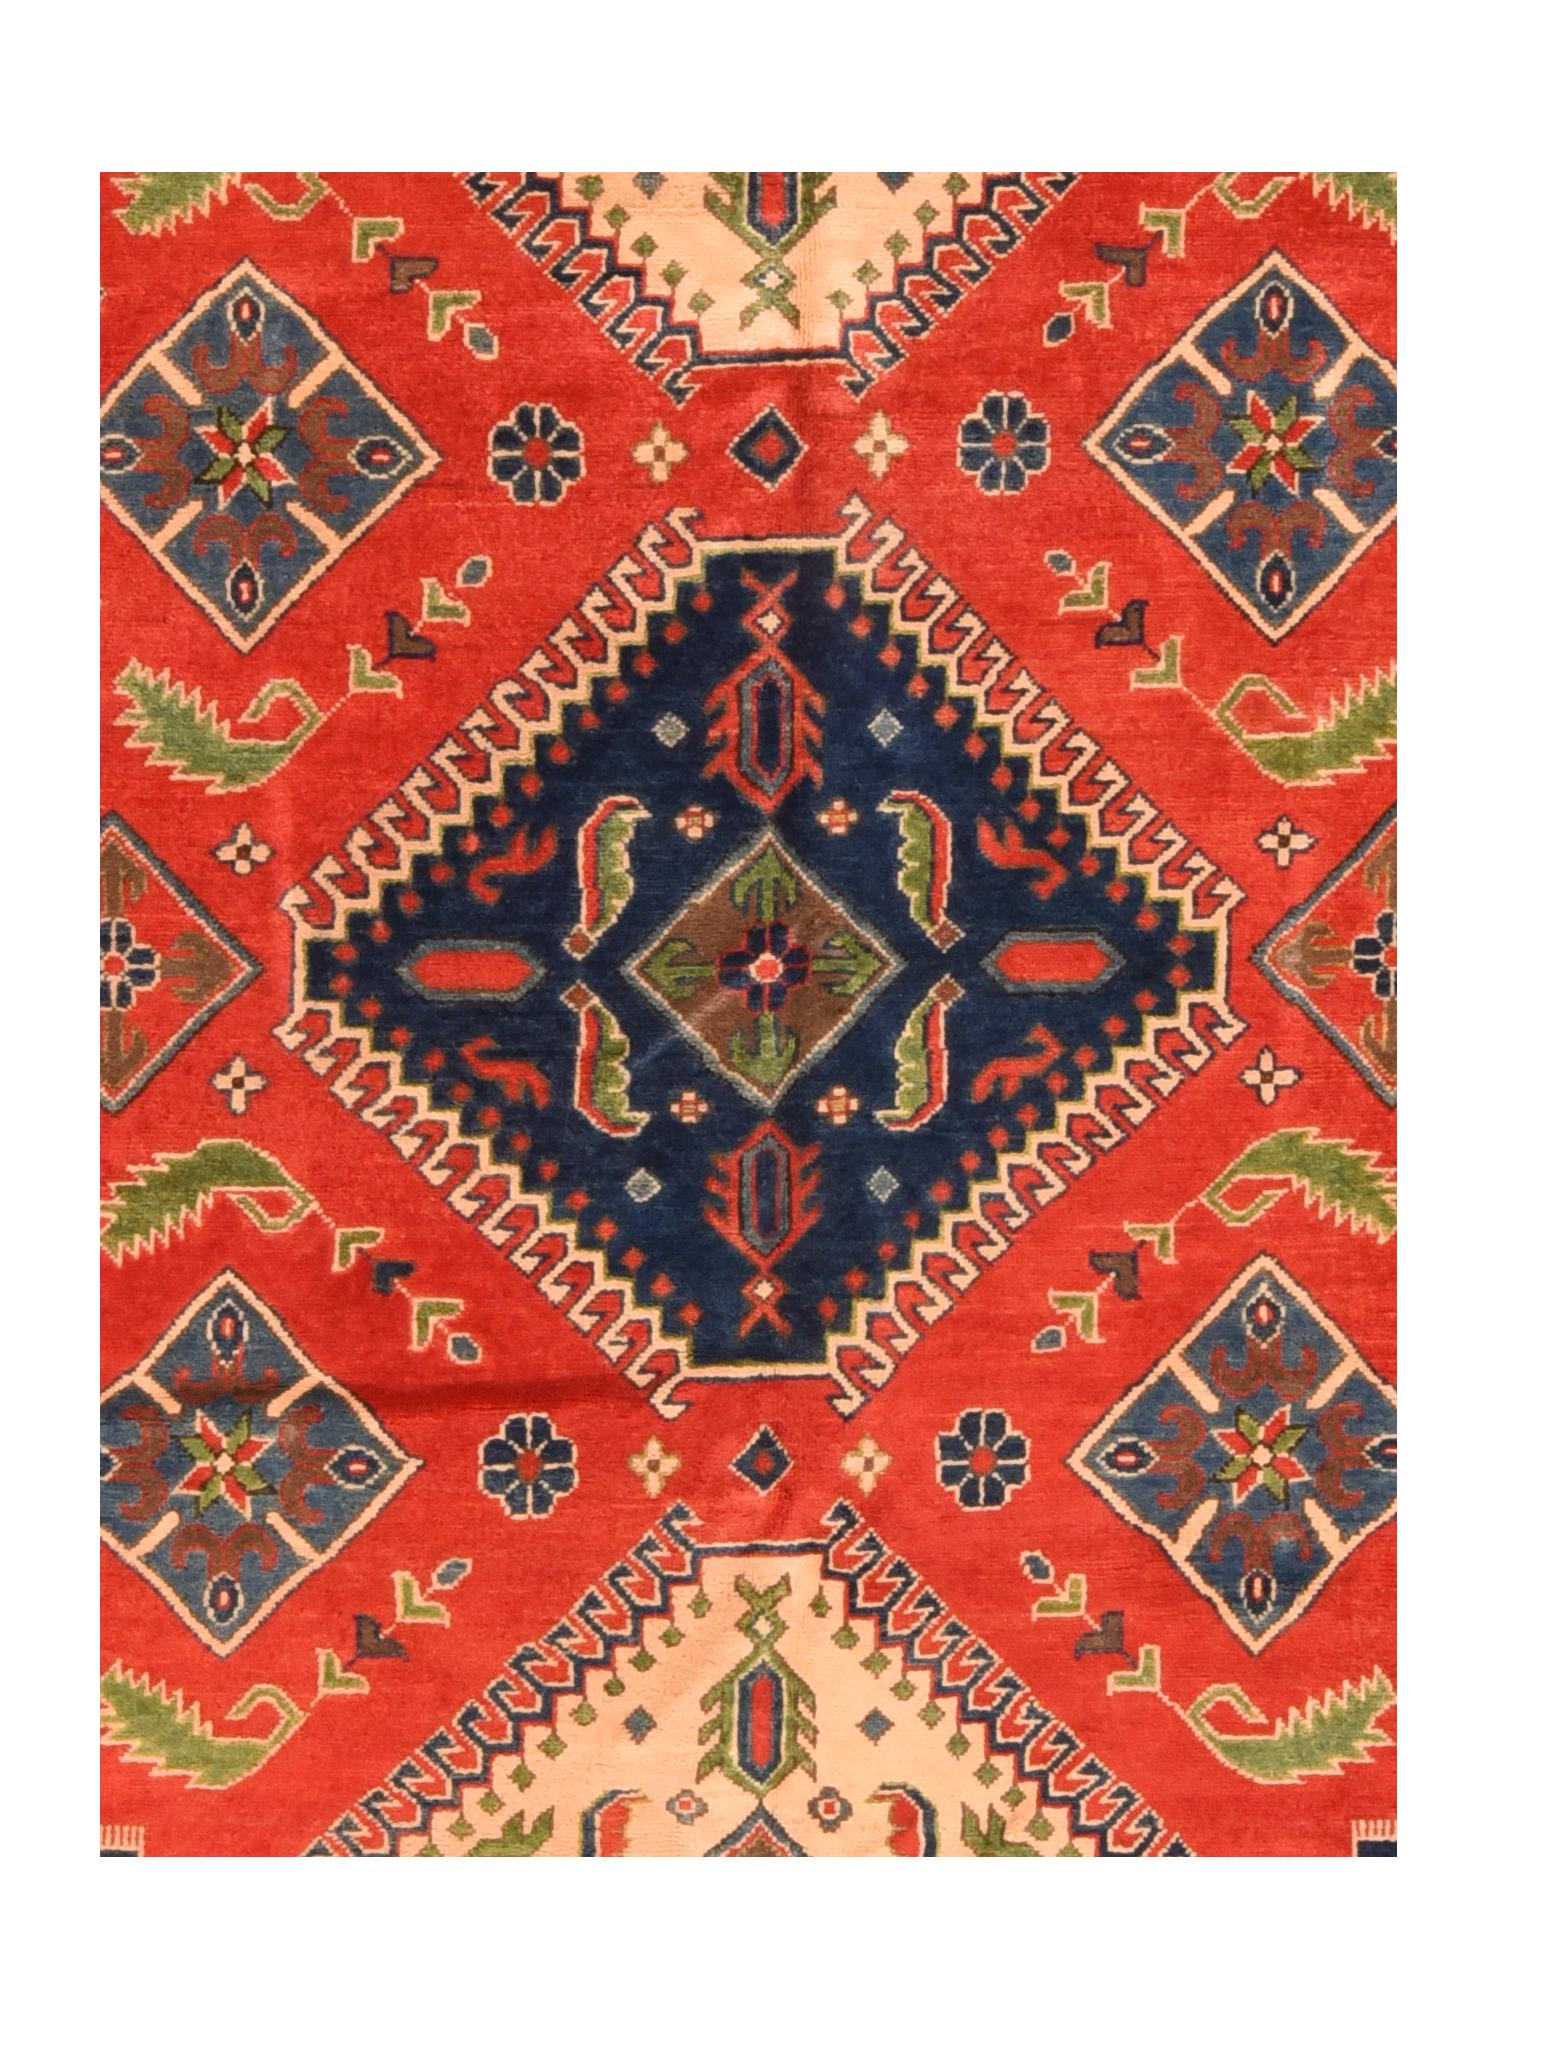 Tapis pakistanais Pak red Kazak, noué à la main

Design : Trois diamants

Un tapis pakistanais (tapis persan ou tapis pakistanais) est un type de textile de revêtement de sol fait à la main et traditionnellement fabriqué au Pakistan.

L'art du